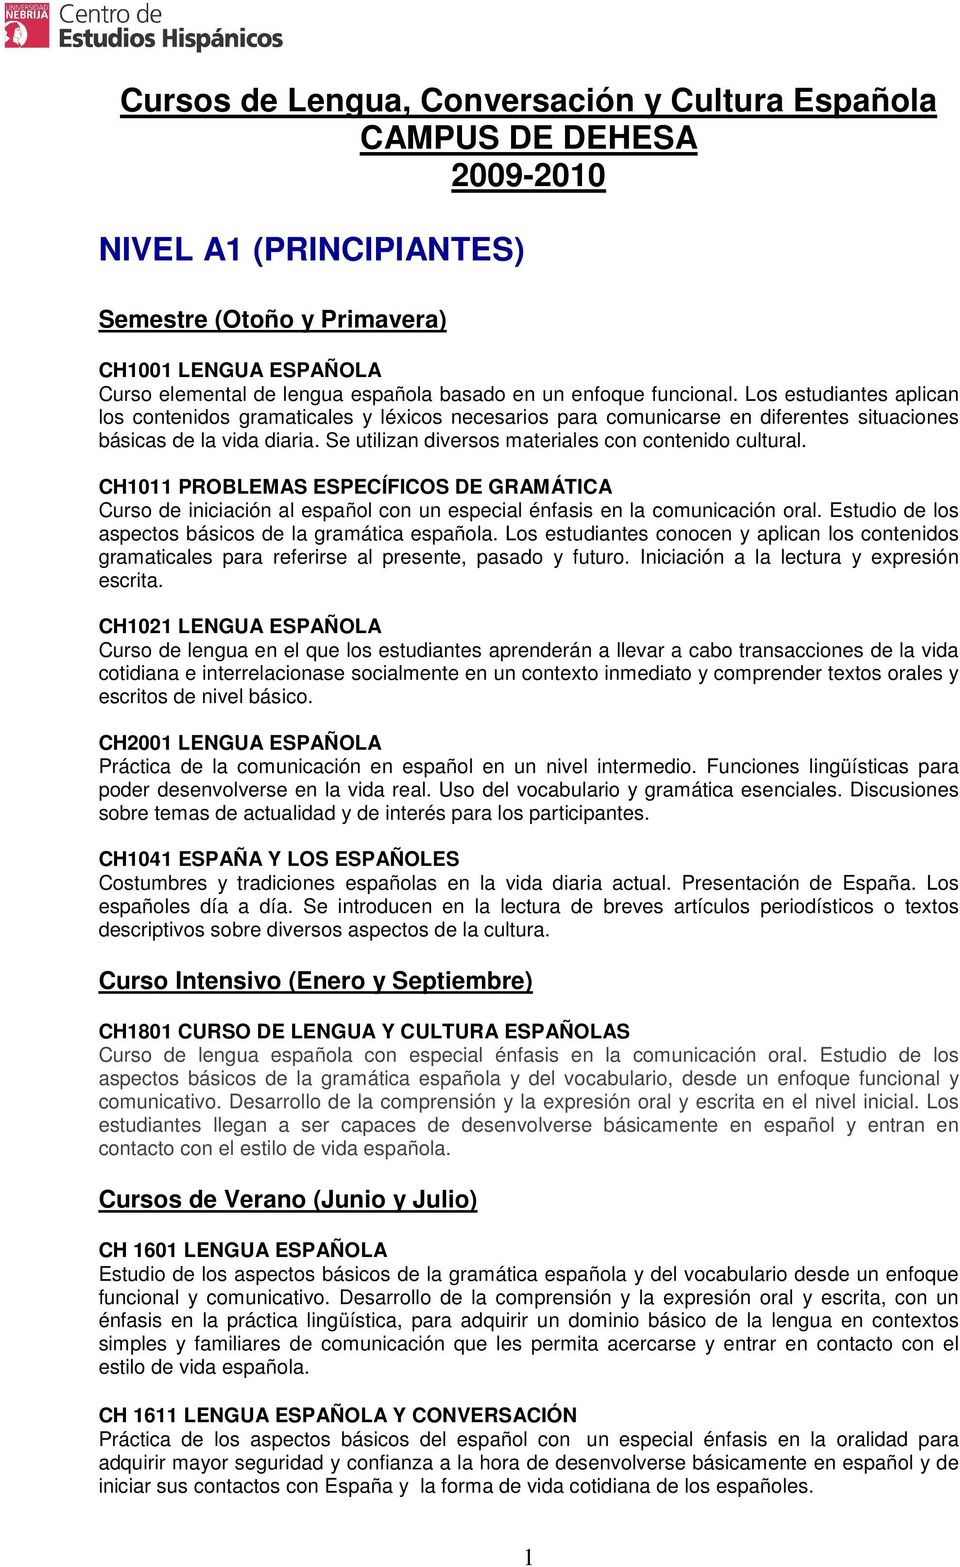 CH1011 PROBLEMAS ESPECÍFICOS DE GRAMÁTICA Curso de iniciación al español con un especial énfasis en la comunicación oral. Estudio de los aspectos básicos de la gramática española.